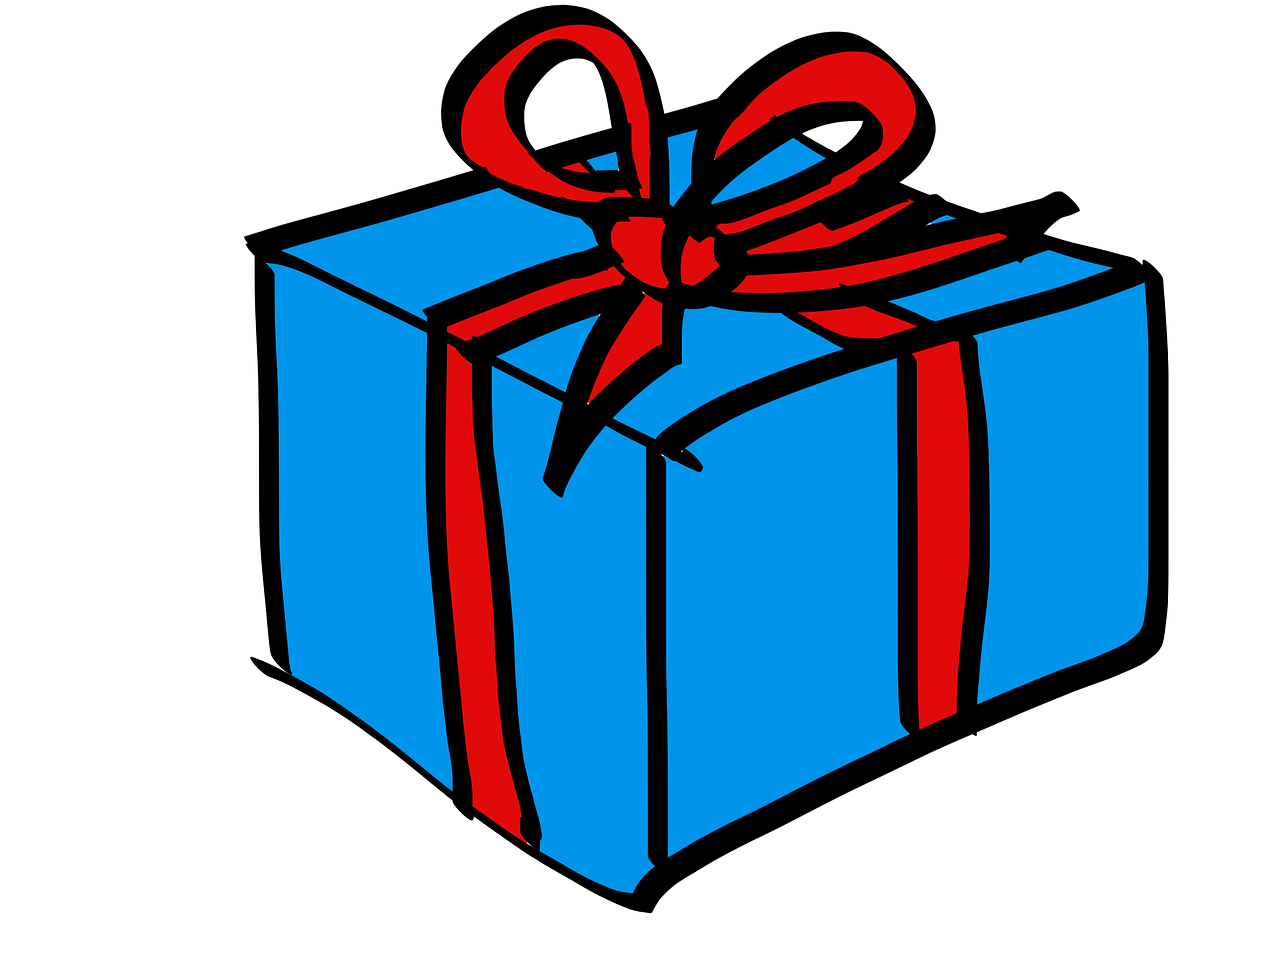 Картинка подарки нарисованная. Подарок мультяшный. Коробка для подарка. Подарочная коробка мультяшная. Коробка с подарком мультяшная.